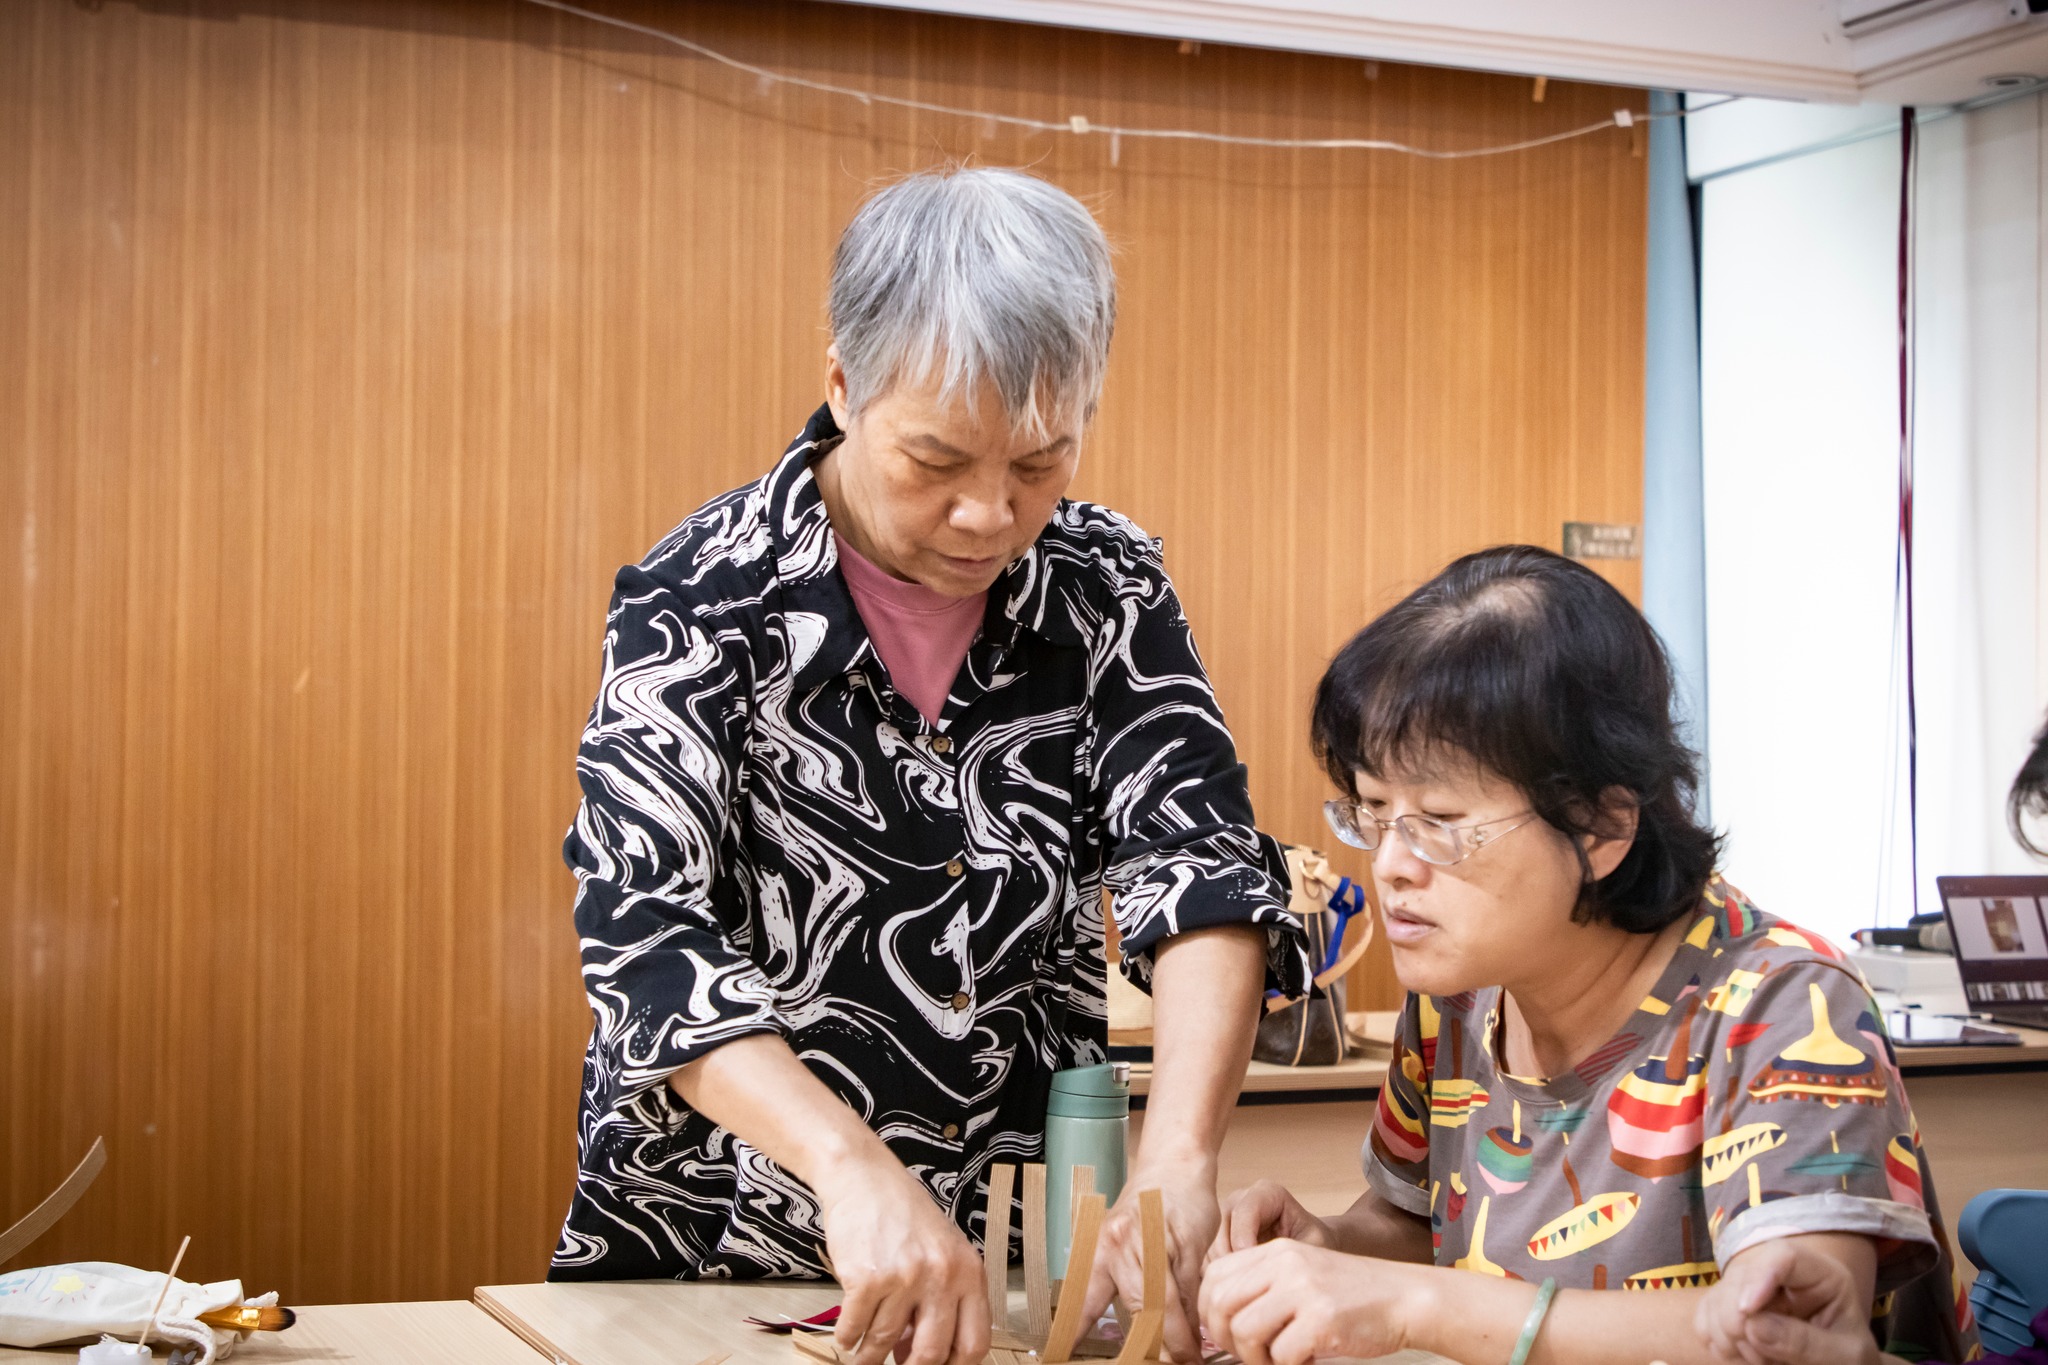 [教育推廣活動]「南島藝能手」原住民族傳統工藝體驗-9.9《PP帶編織置物盒》圖片2853